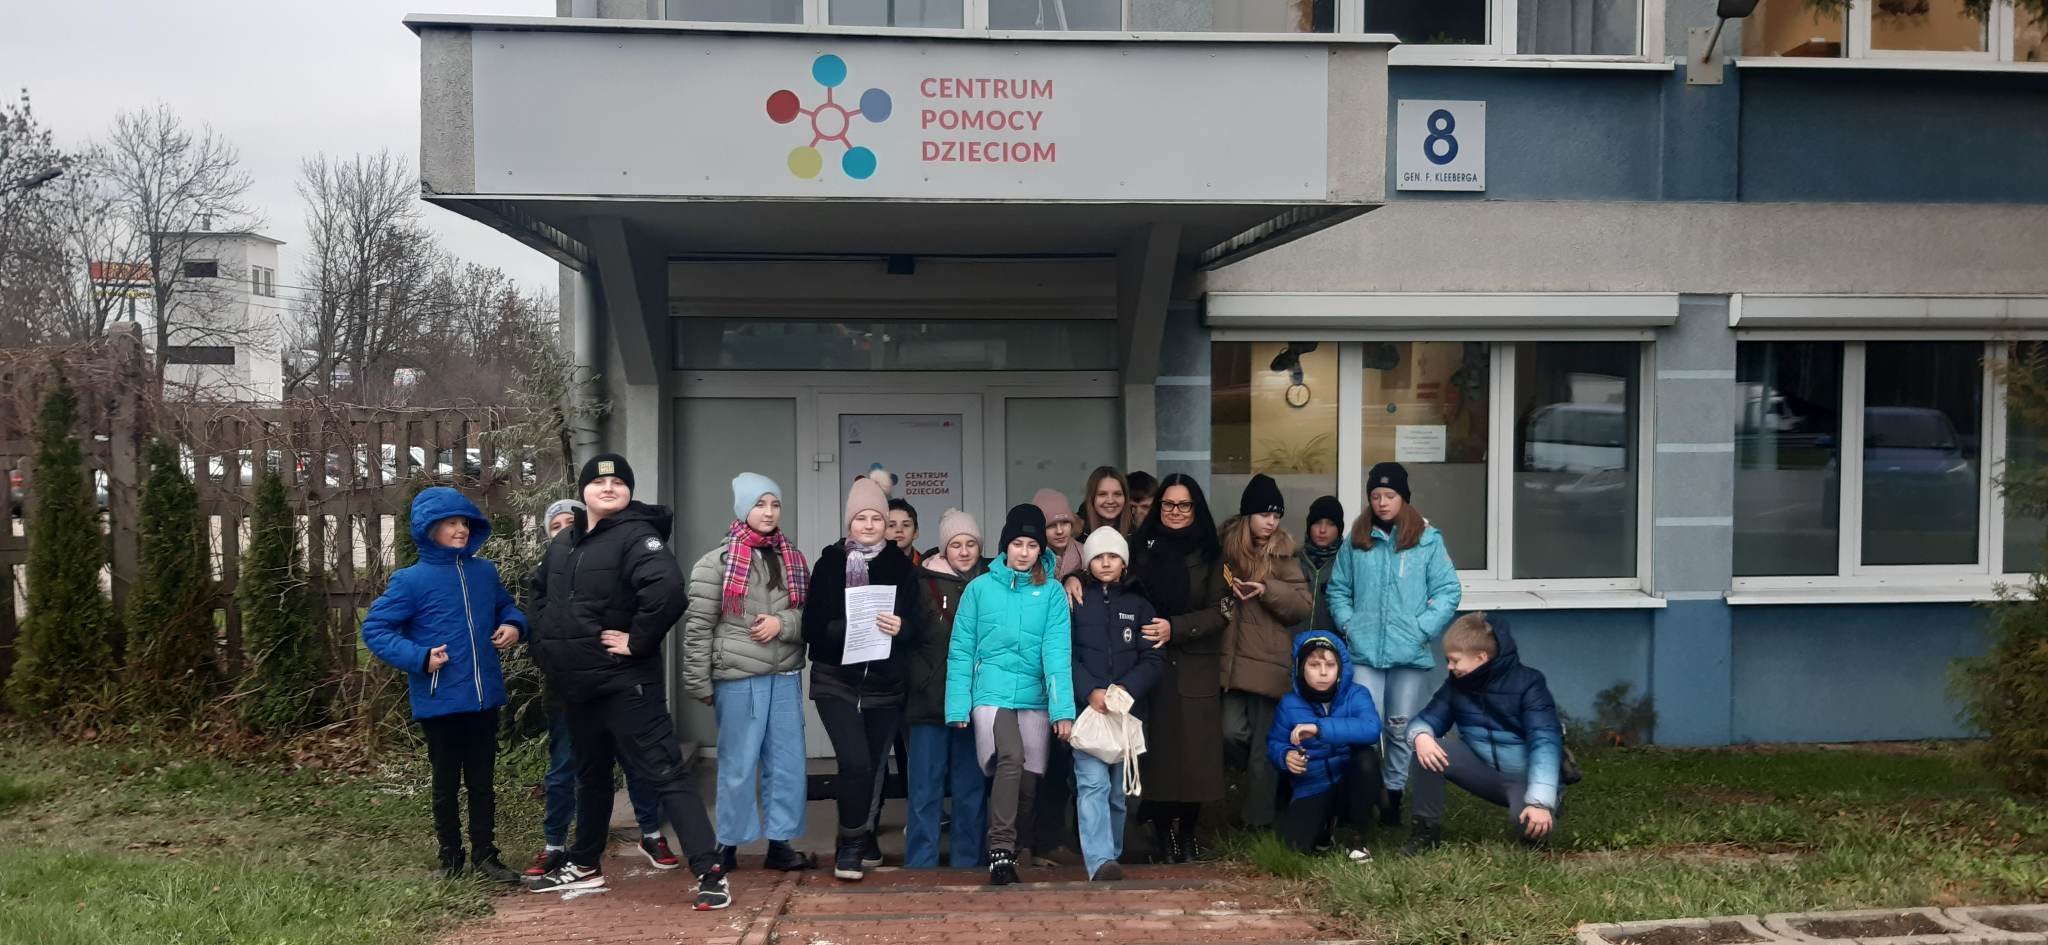 grupa dzieci stoi przed budynkiem z napisem Centrum Pomocy Dzieciom .jpg